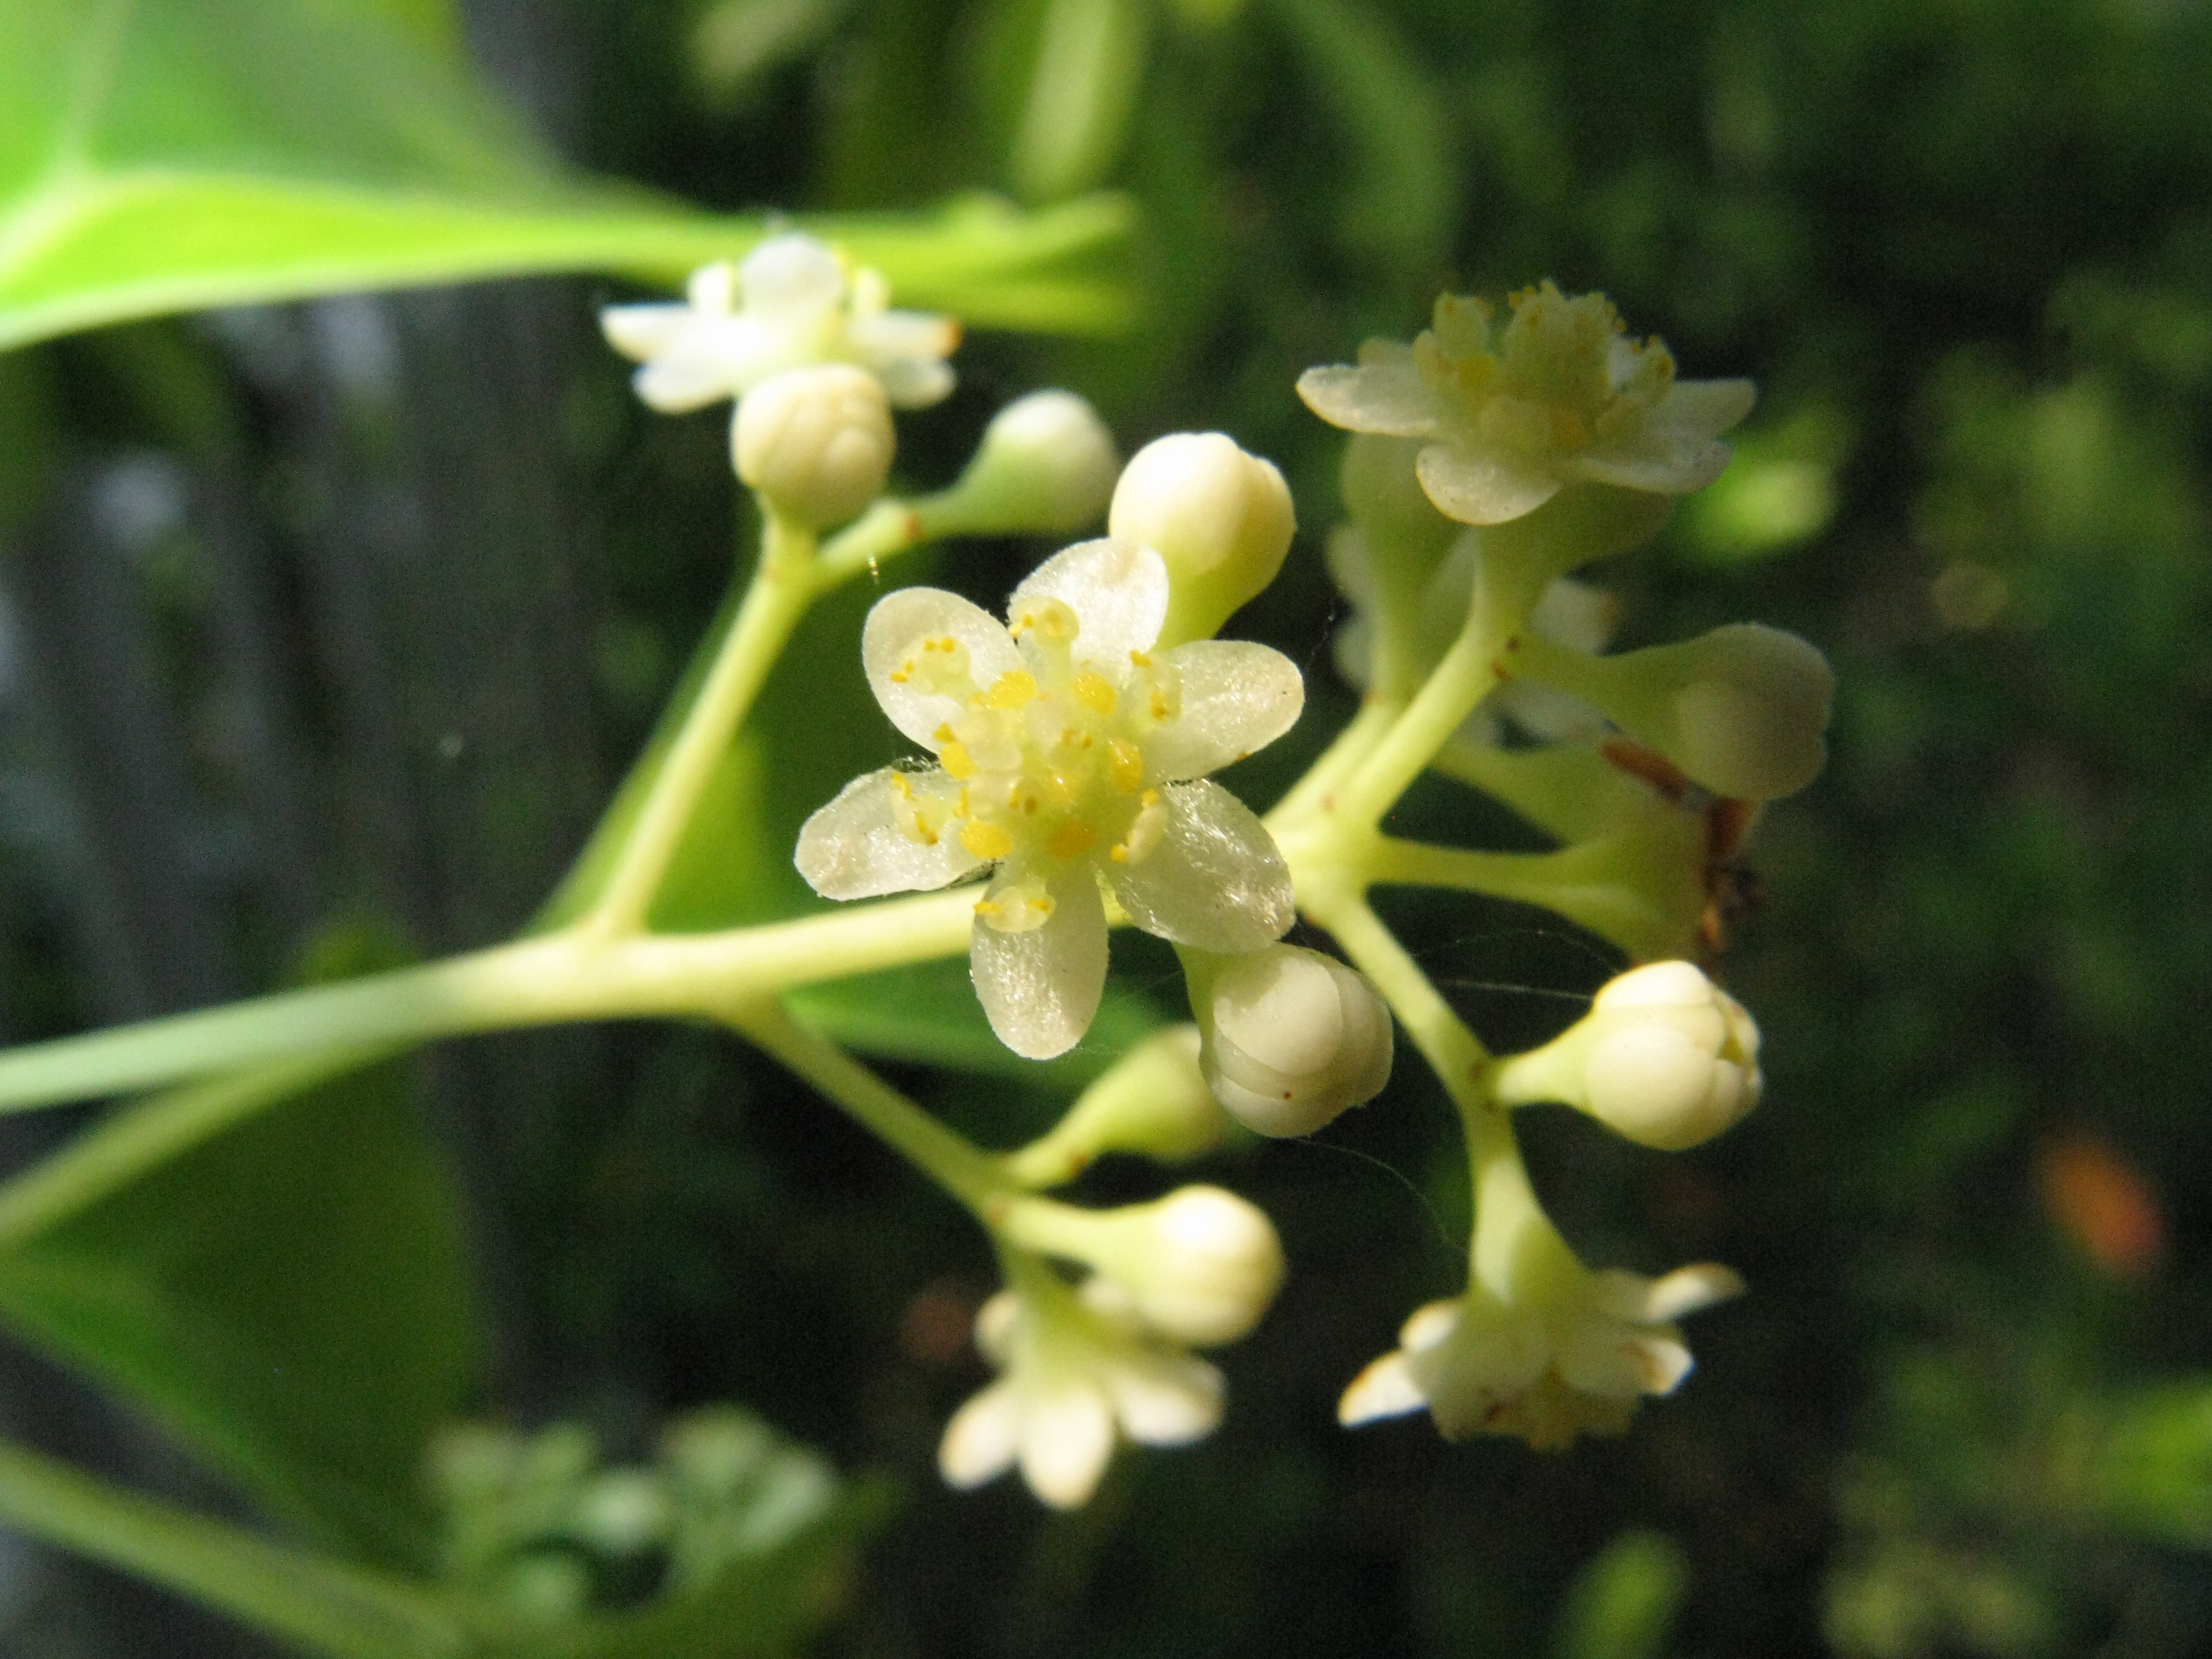 Ravintsara (Cinnamomum Camphora)